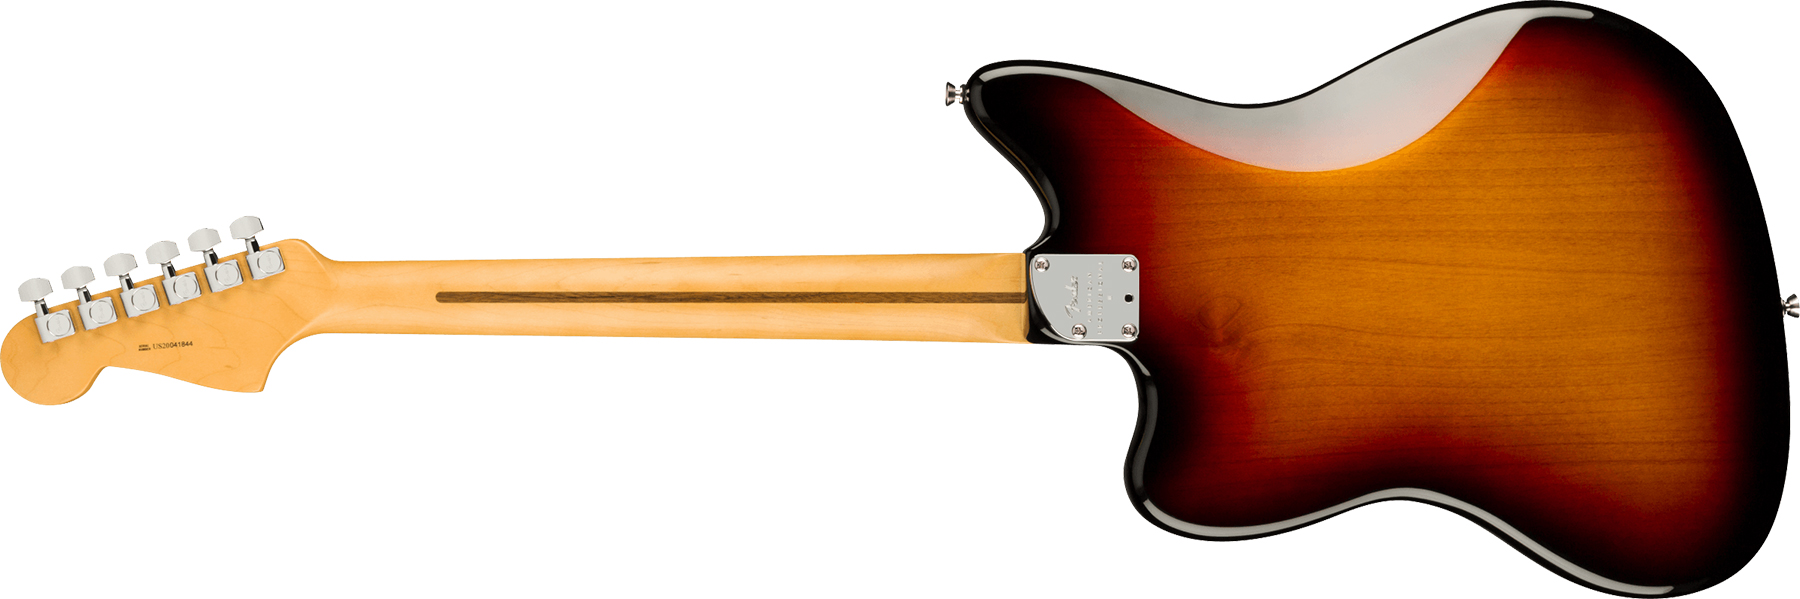 Fender Jazzmaster American Professional Ii Lh Gaucher Usa Rw - 3-color Sunburst - Linkshandige elektrische gitaar - Variation 1